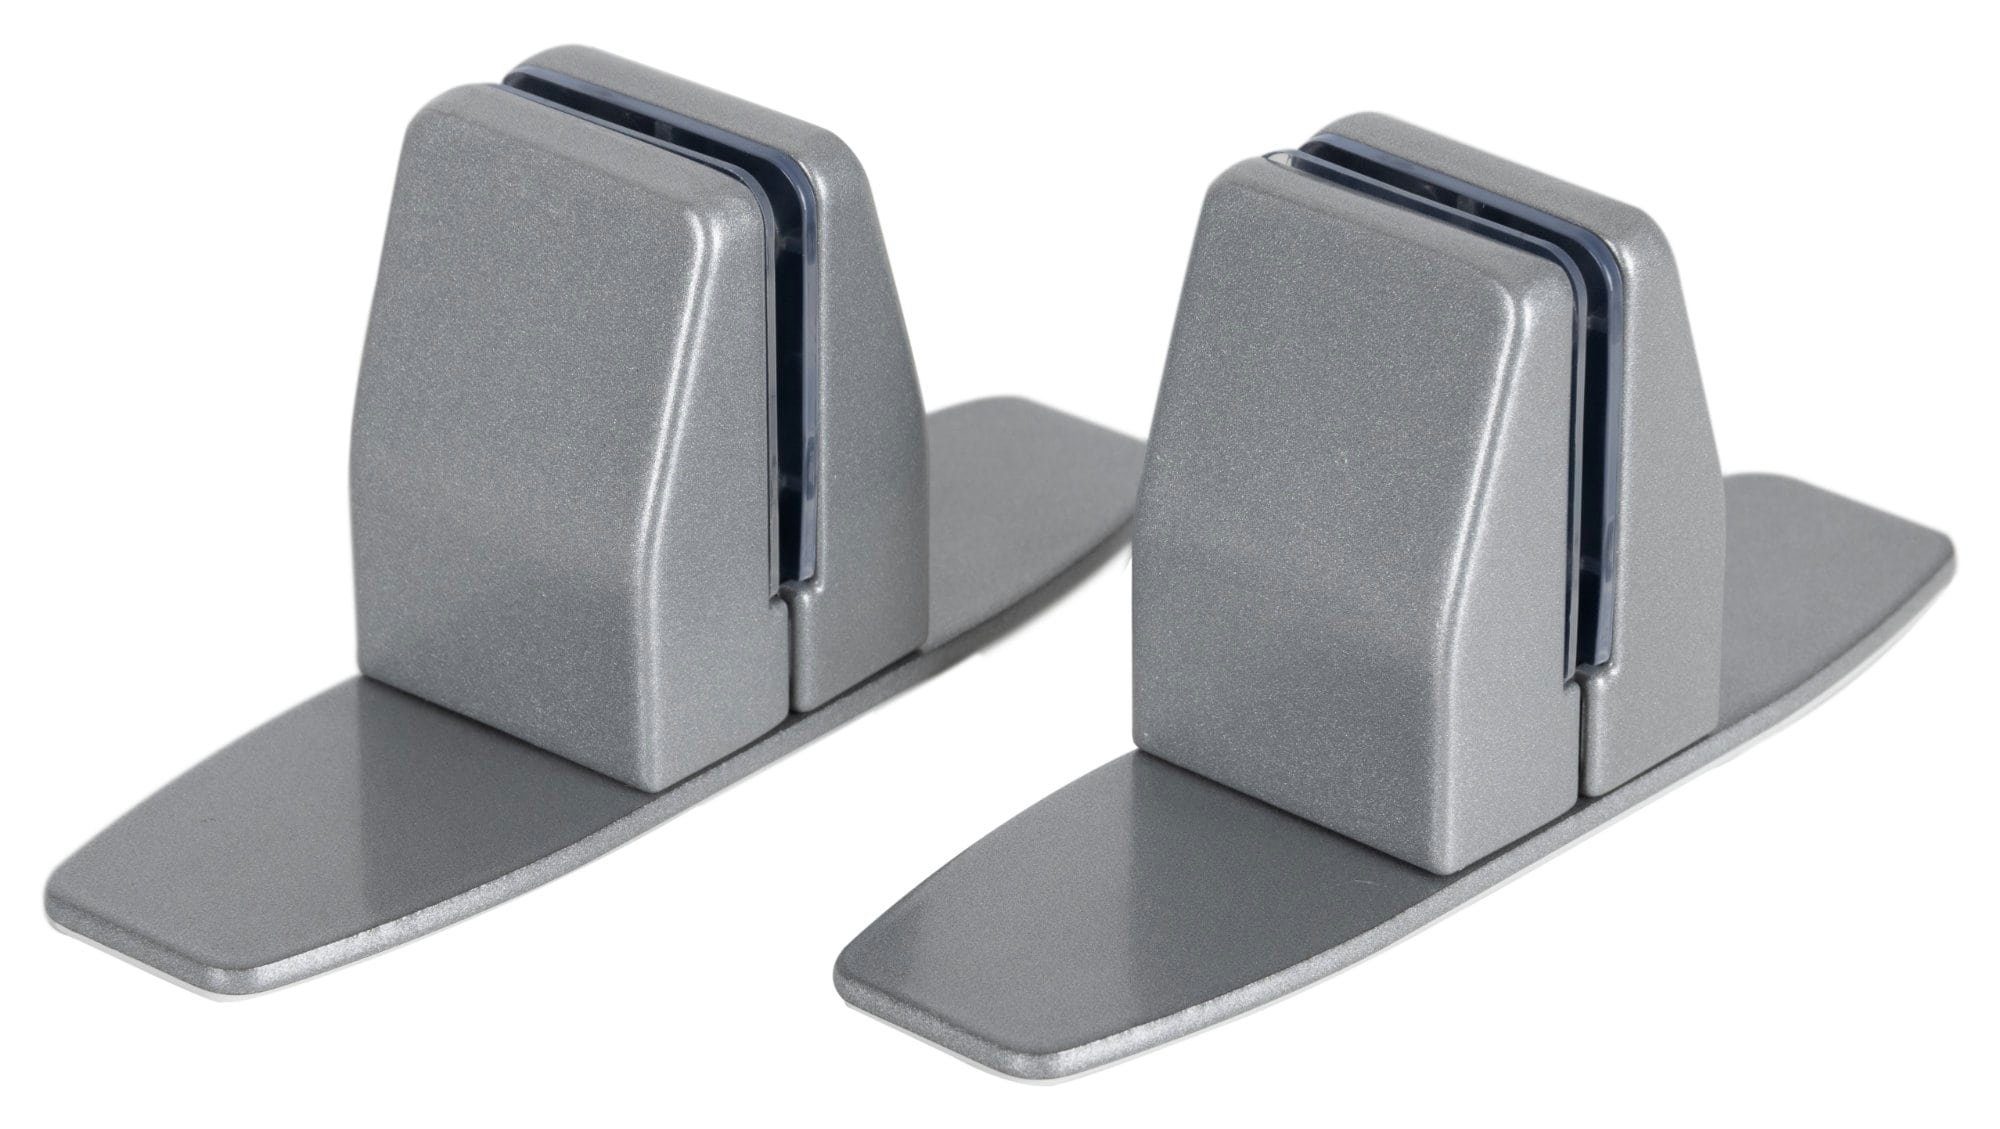 Pronomic Untergestell Standfüße - Stabile Klemmfüße aus Metall - füße für  Trennwände, Zubehör für Tischtrennwand oder DiviDesk-Elementen, Große,  rutschfeste Standfläche